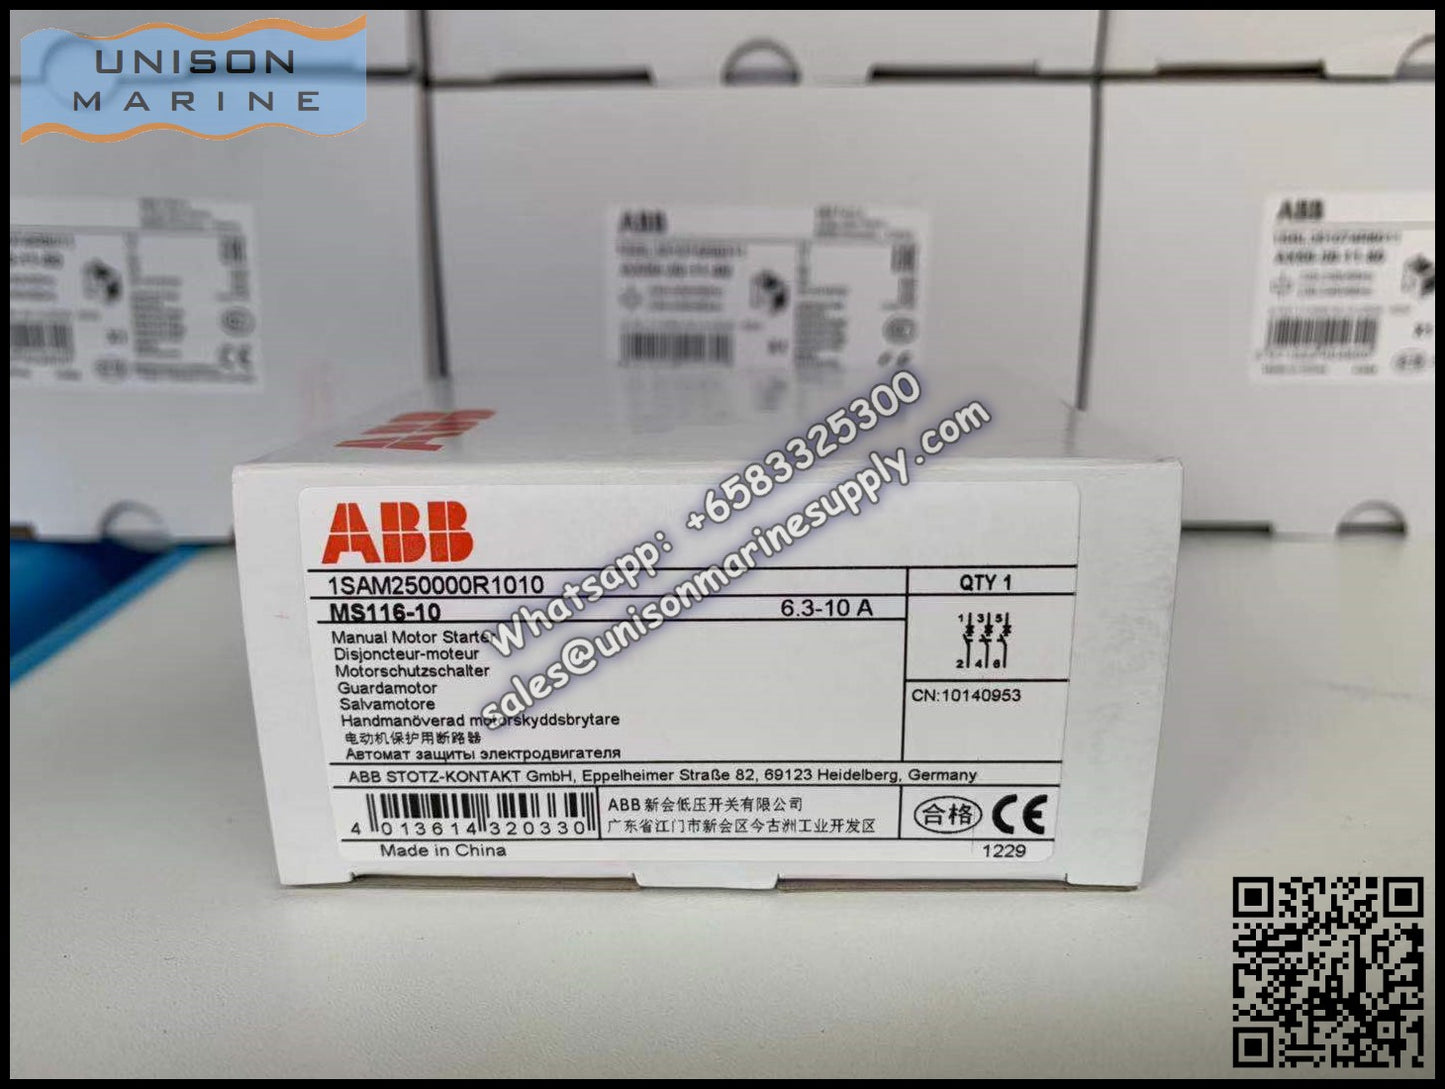 ABB Manual Motor Starter MS116-10 1SAM250000R1010